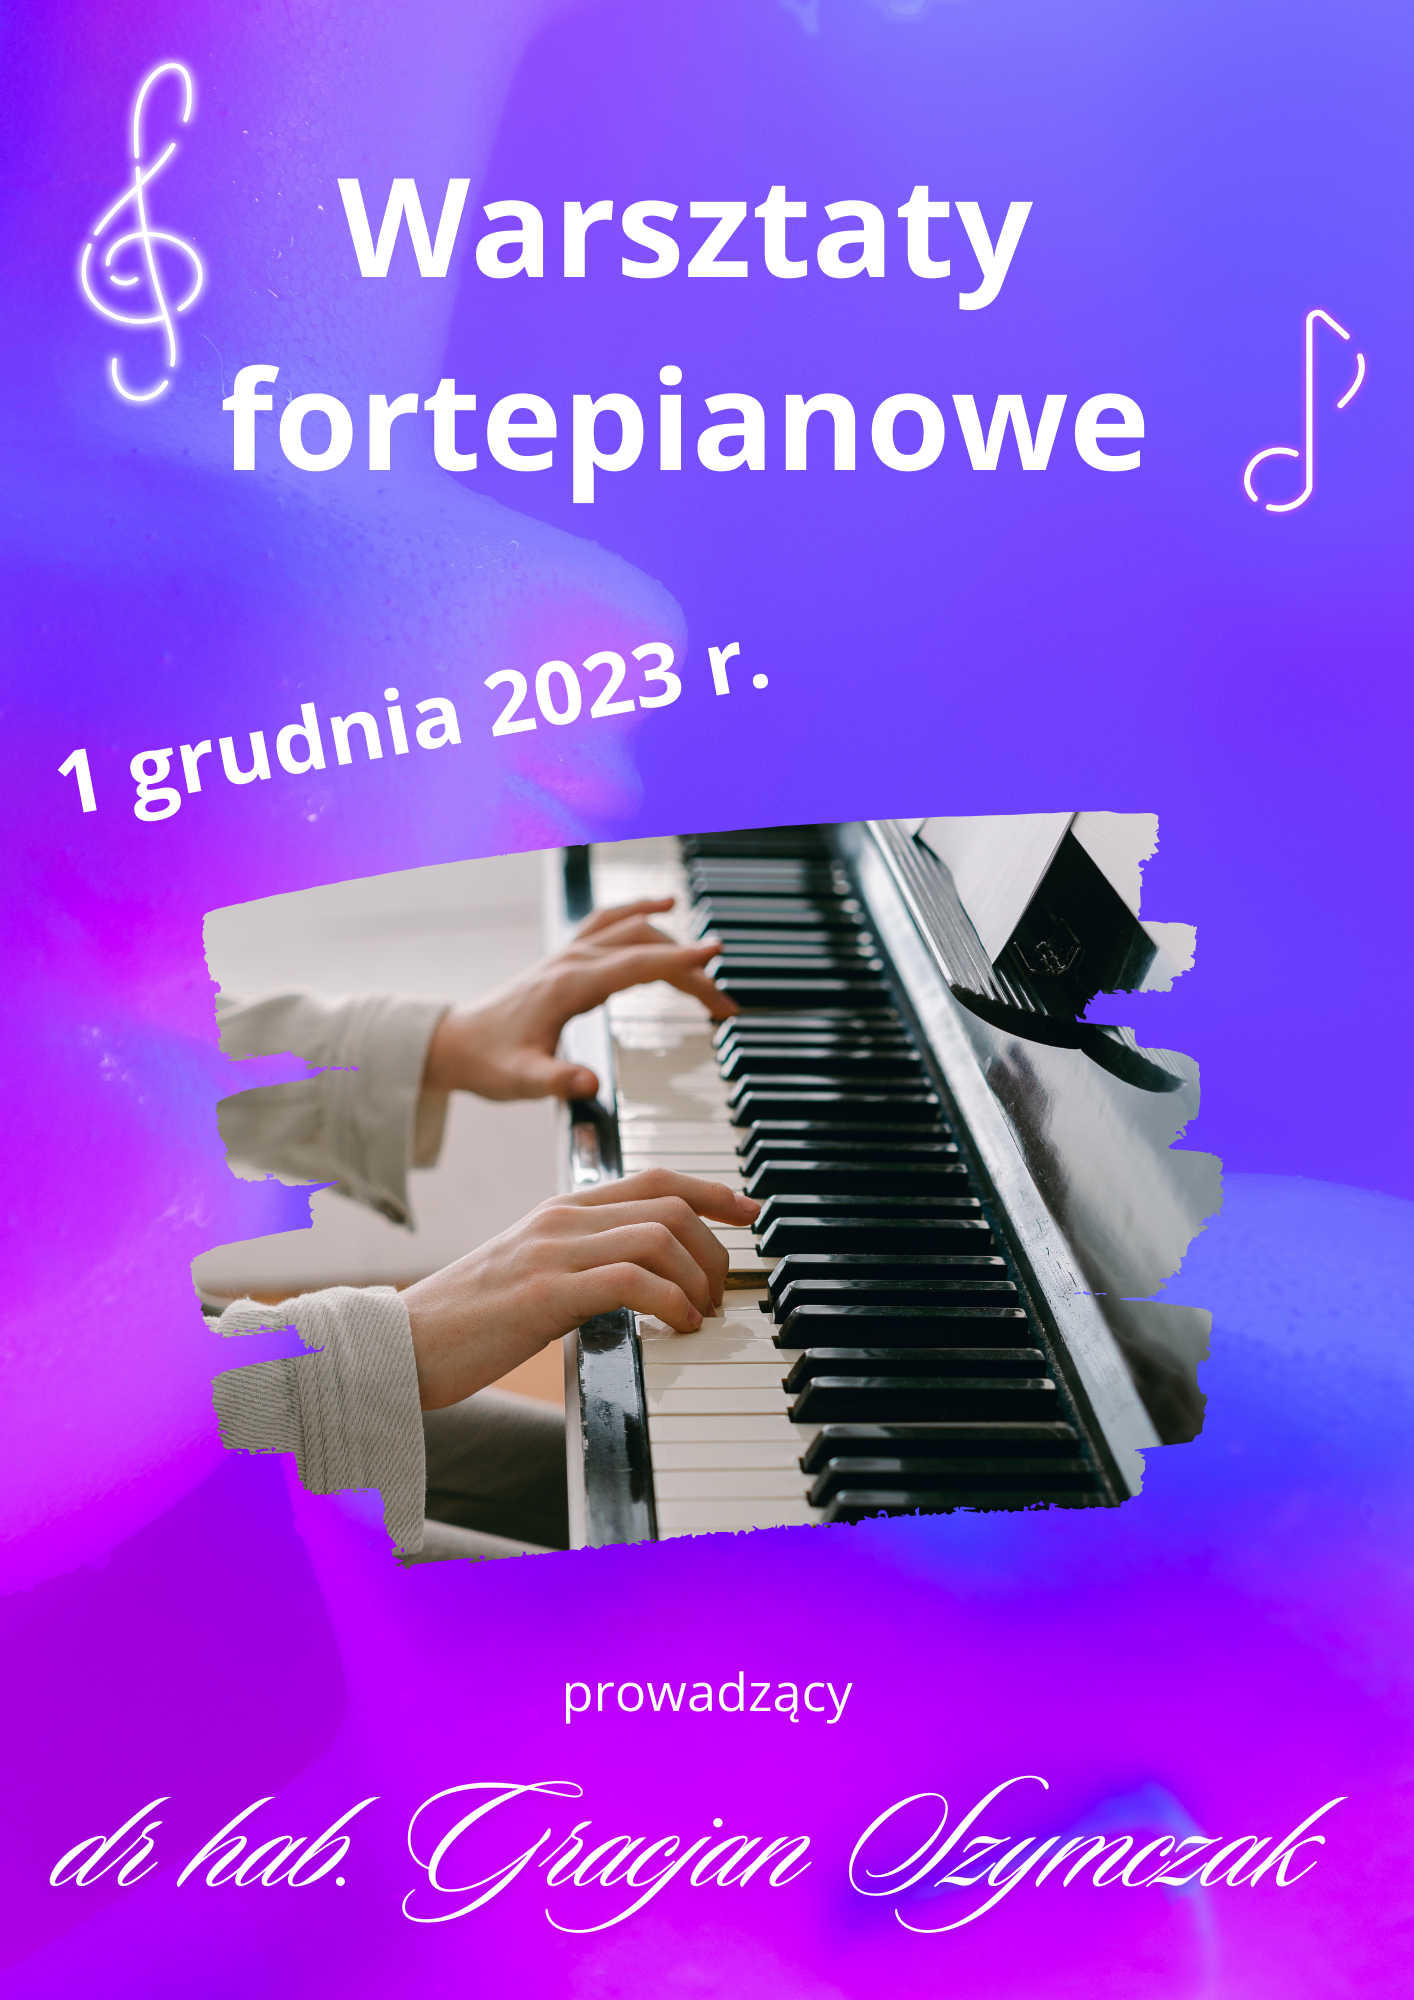 warsztaty fortepianowe 1.12.2023 